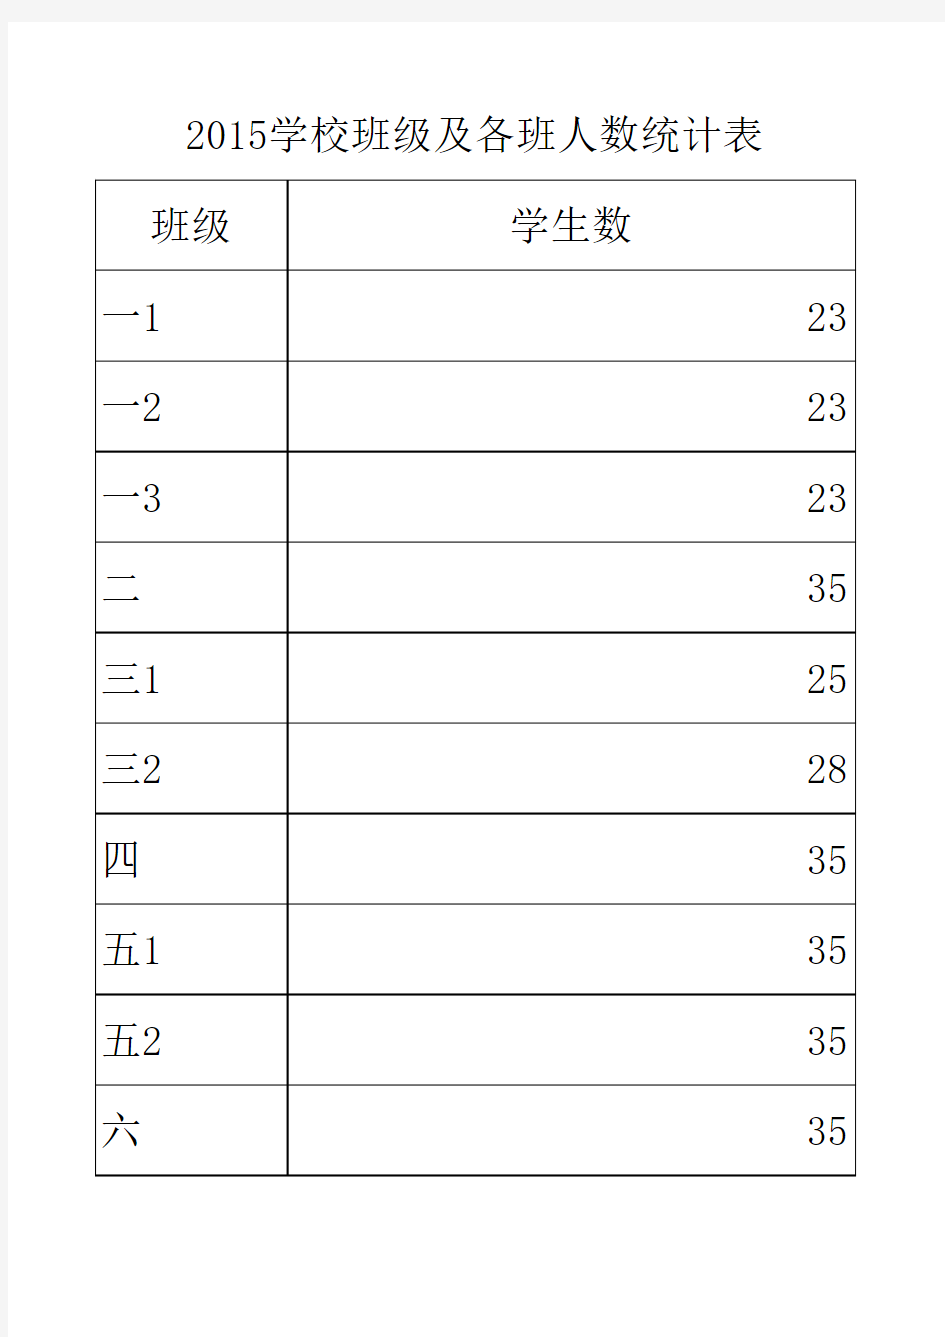 2015学校班级及各班人数统计表